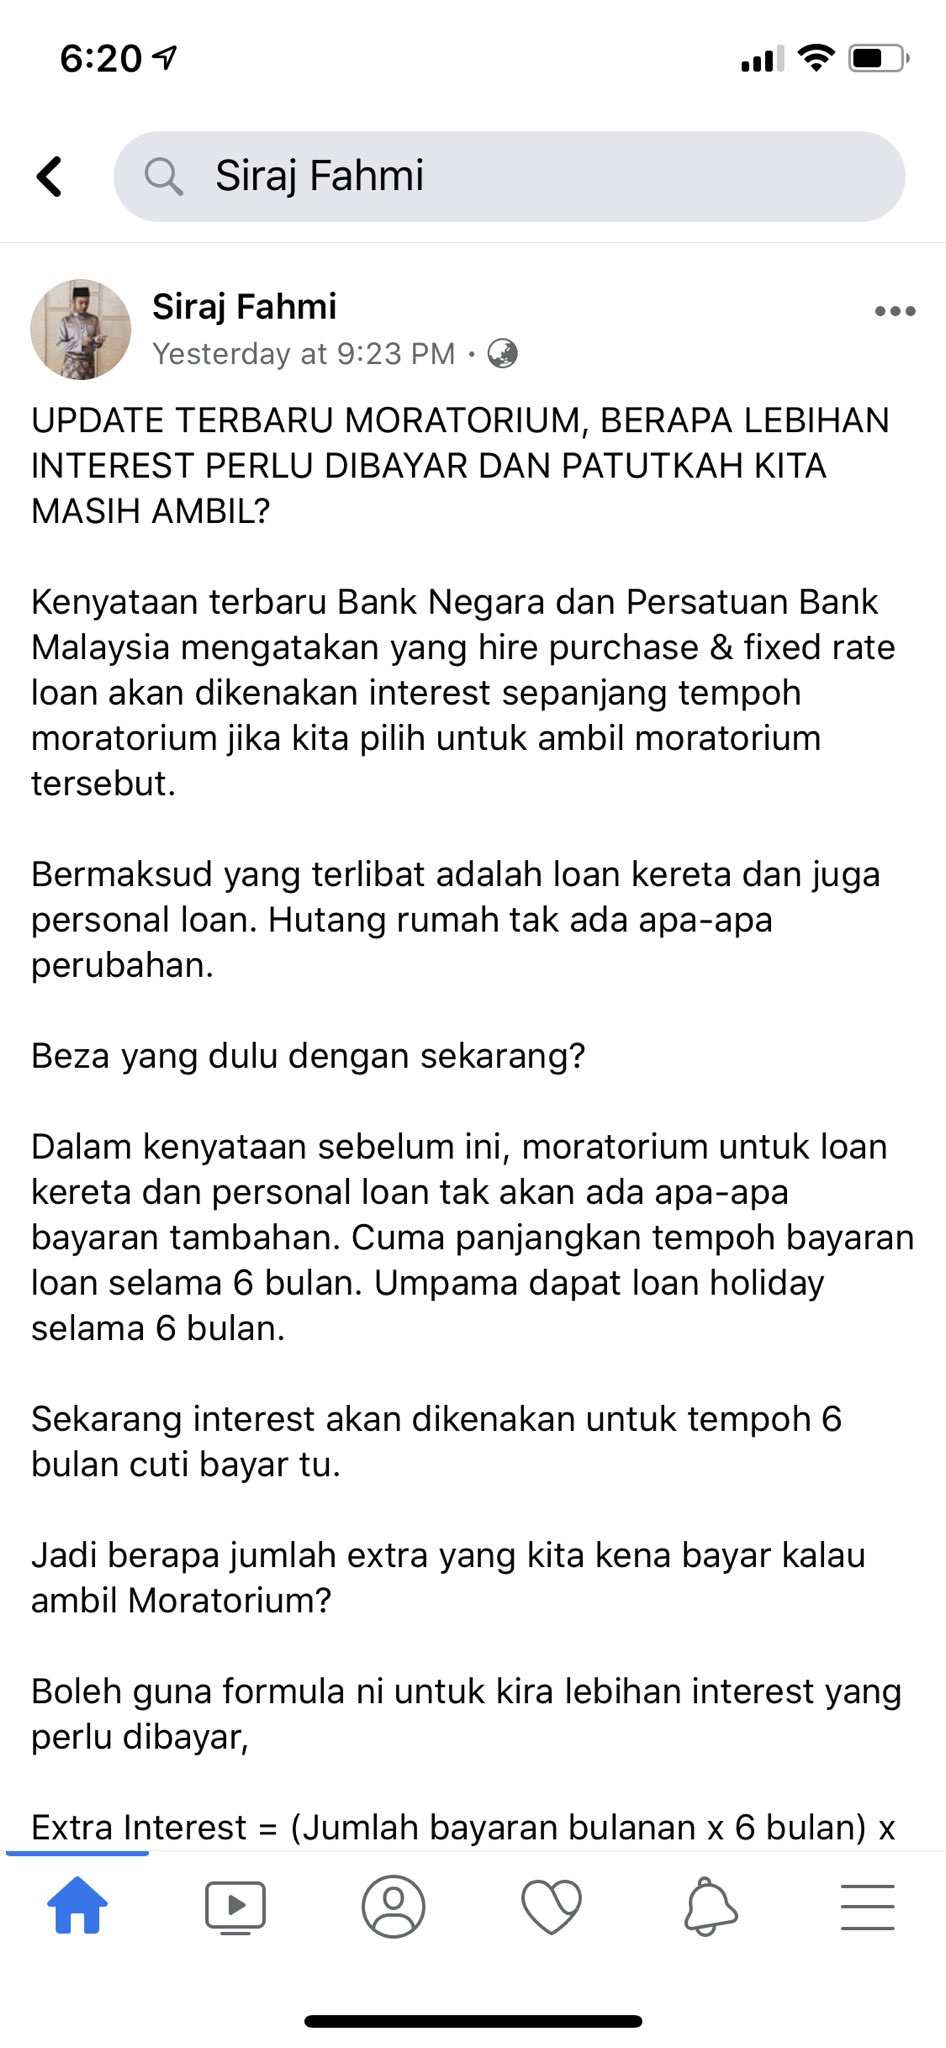 Moratorium bank persatuan